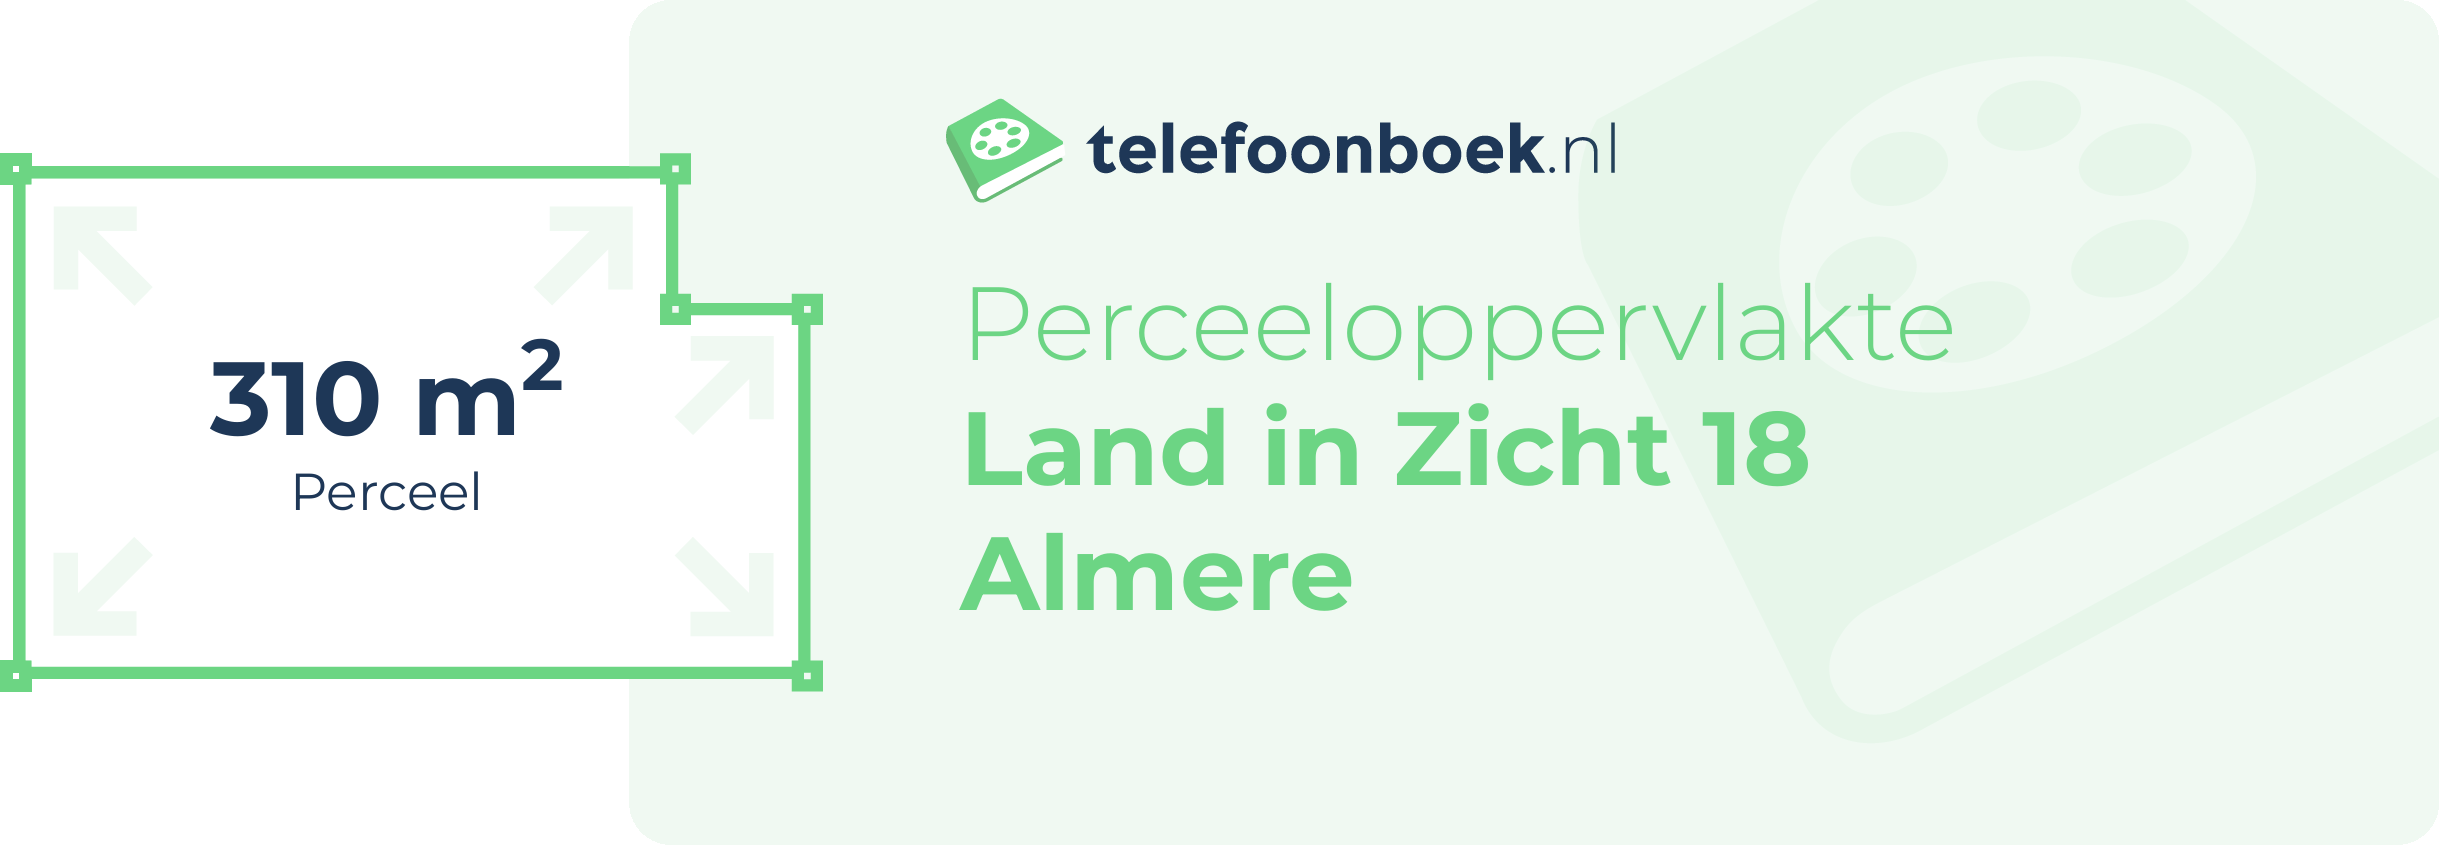 Perceeloppervlakte Land In Zicht 18 Almere